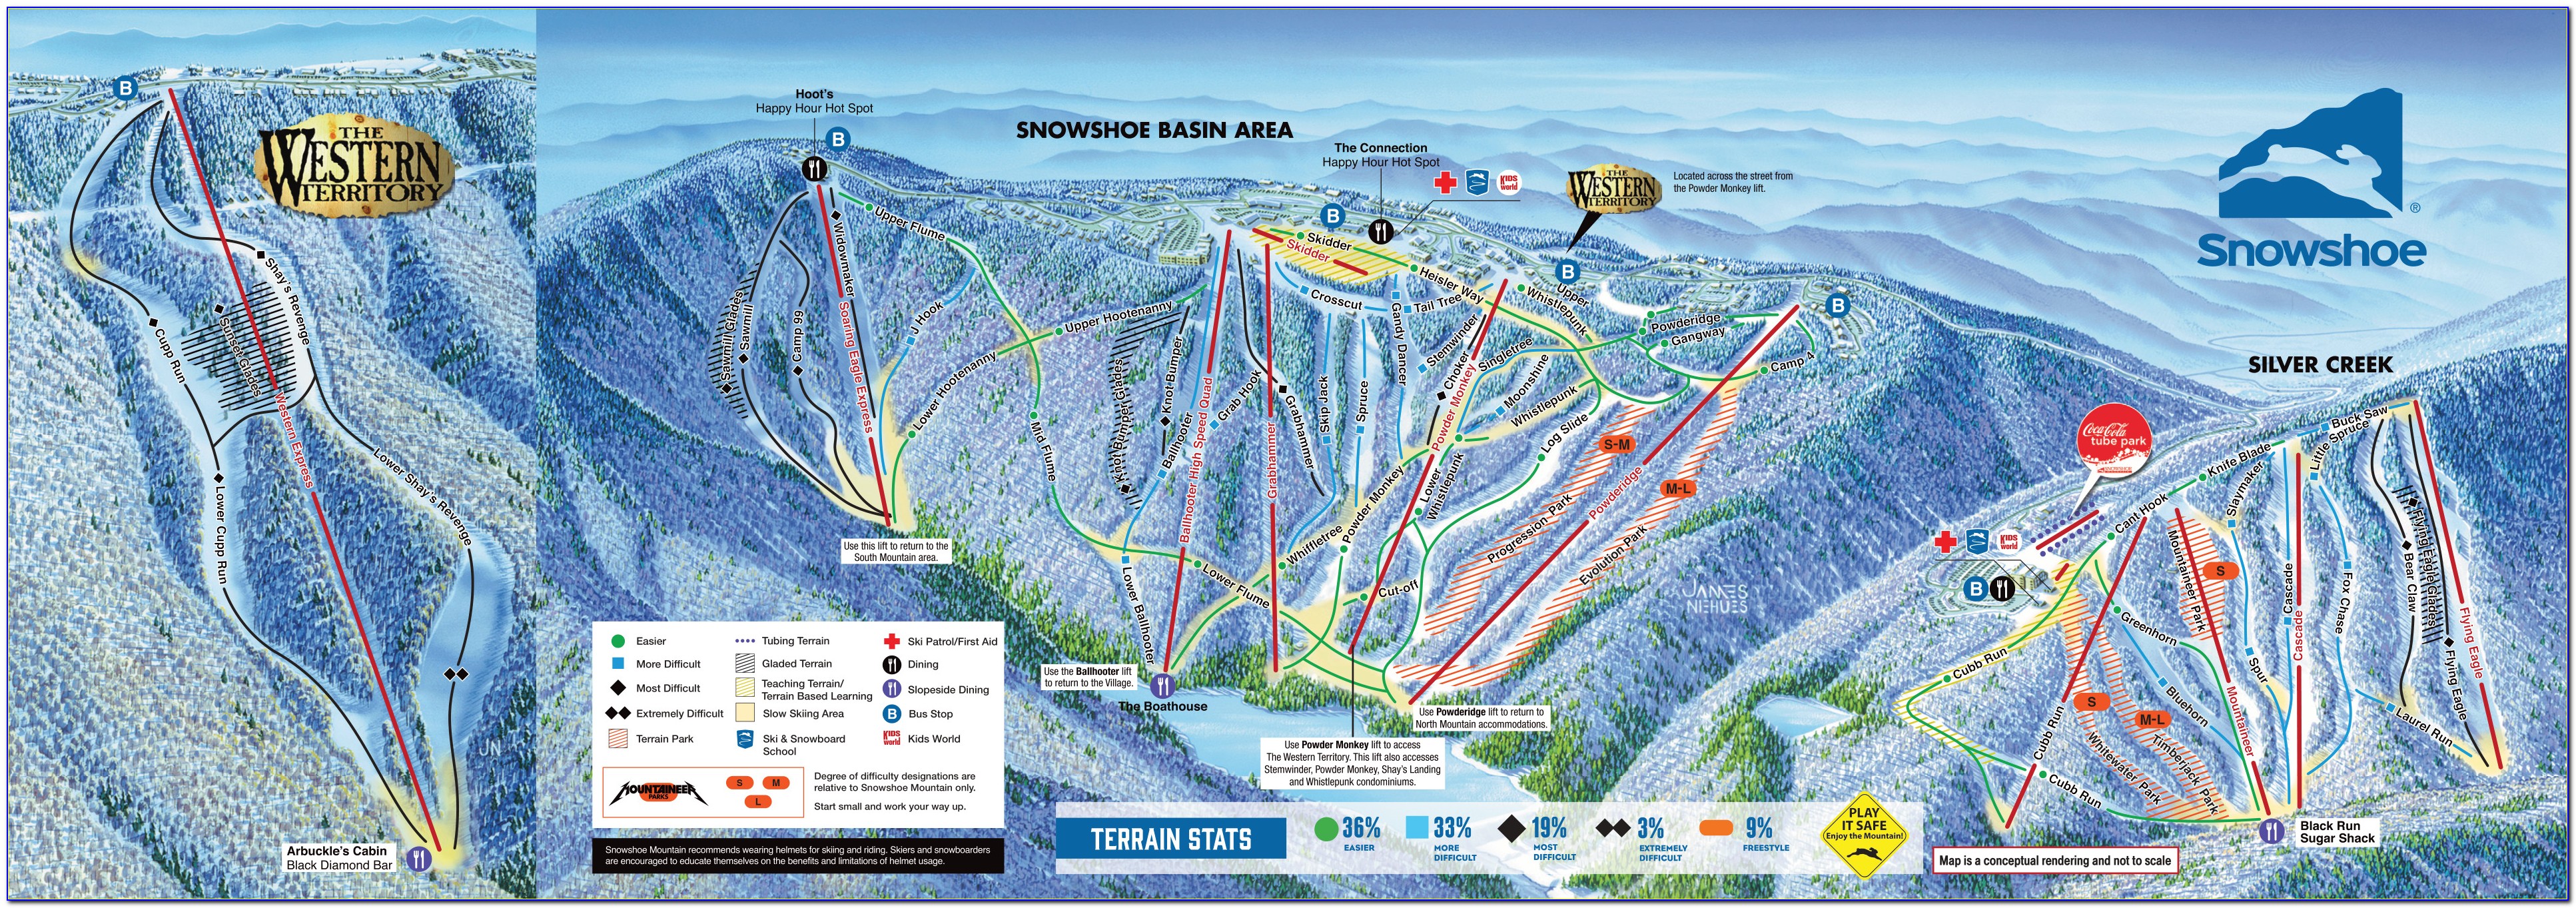 Snowshoe Mountain Resort Trail Map